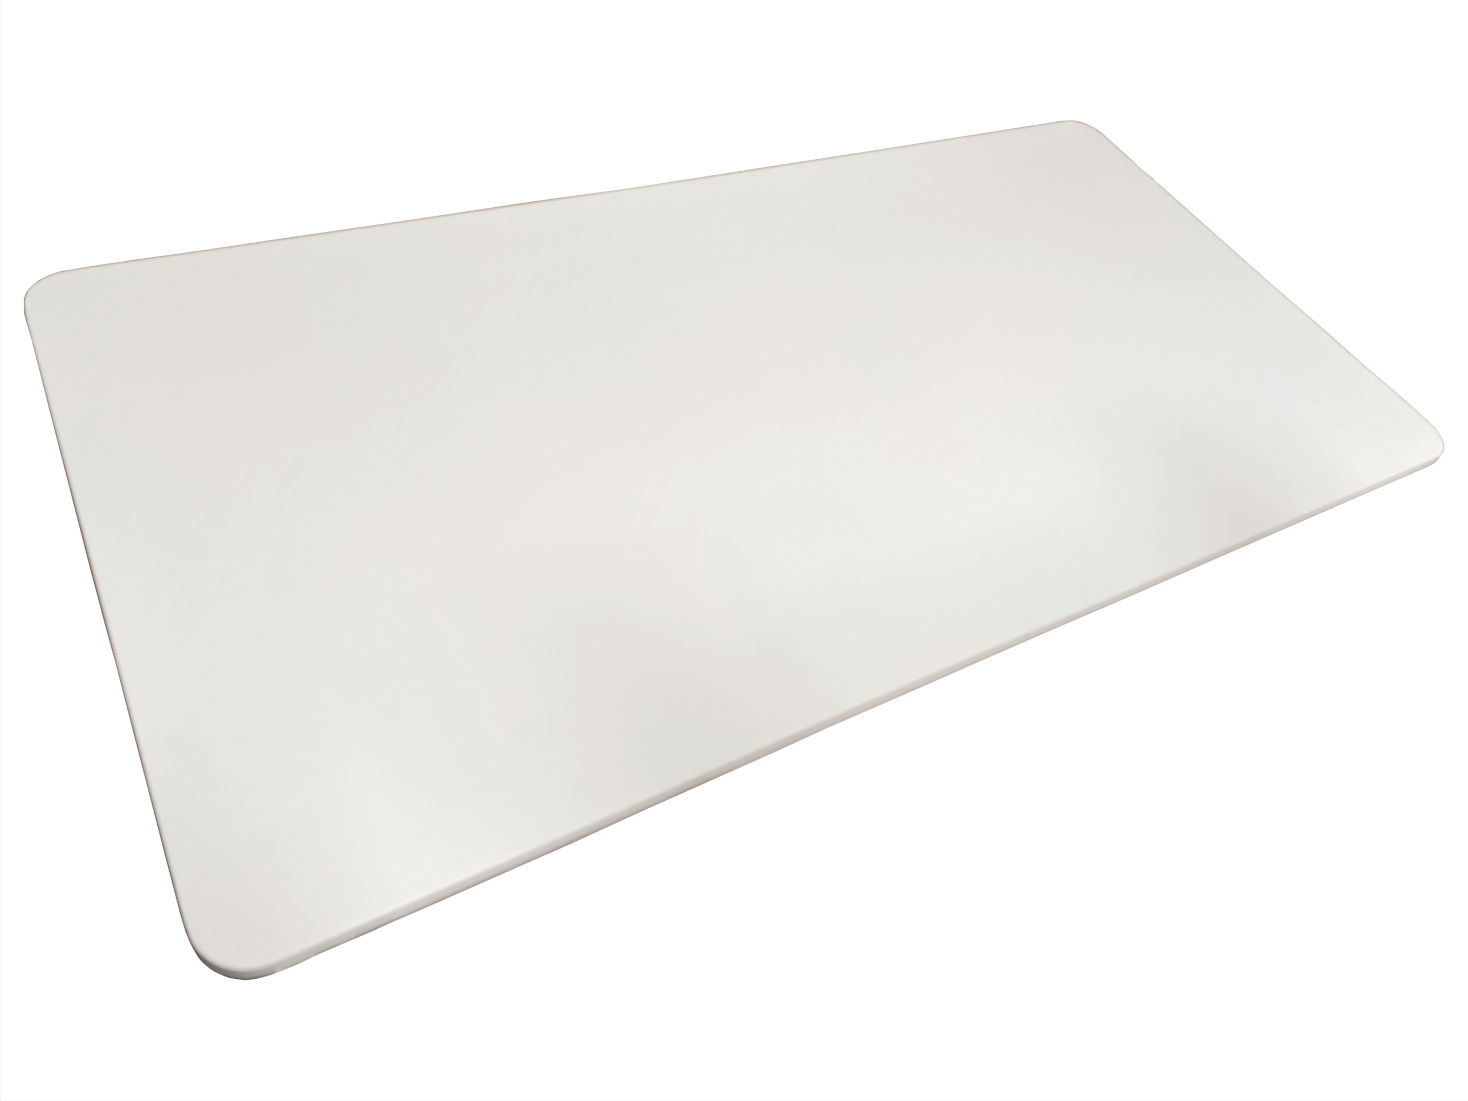 Tischplatten Verbundholz 1600 mm 800 mm 17 mm stark weiss (1 Stück)